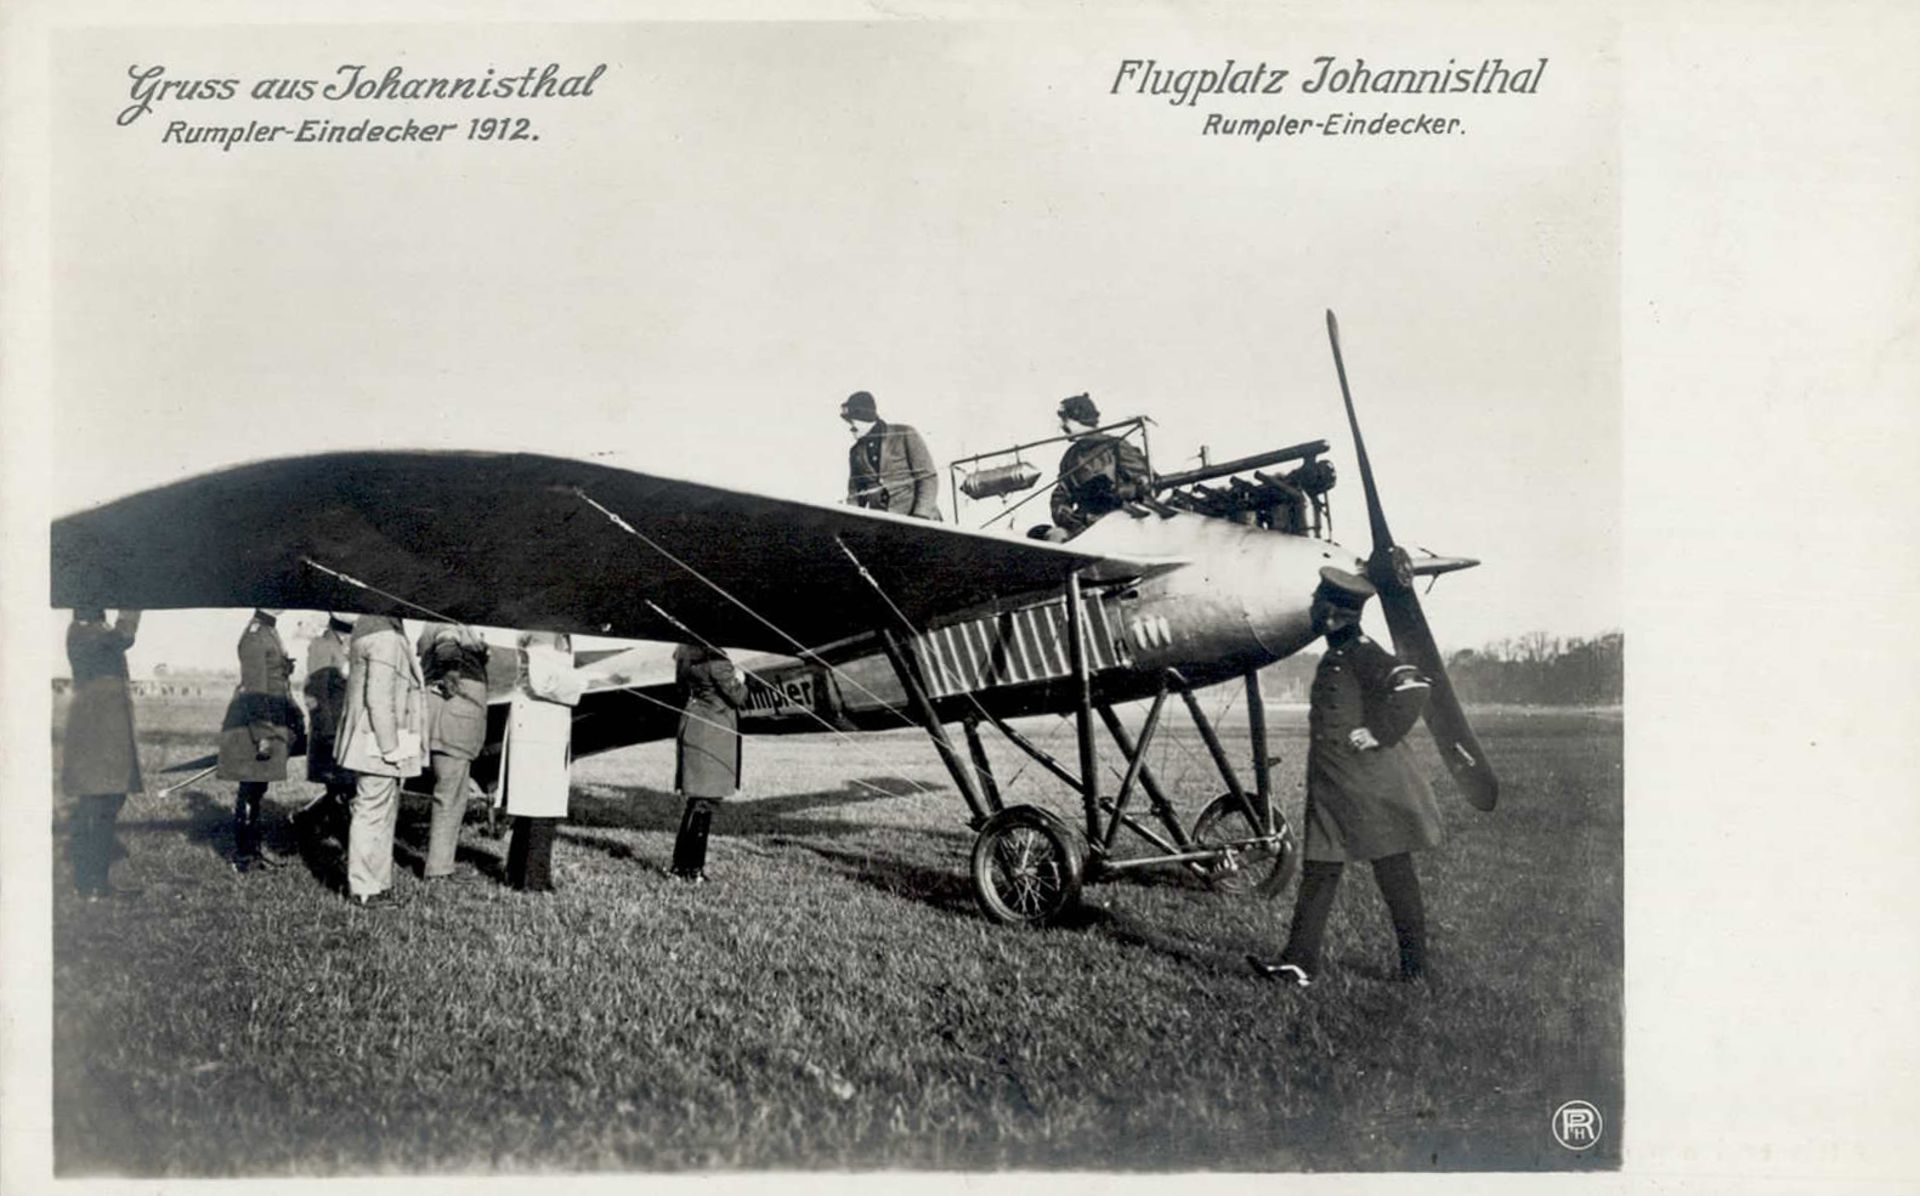 Sanke Flugzeug Johannisthal Rumpler-Eindecker 1912 I-II